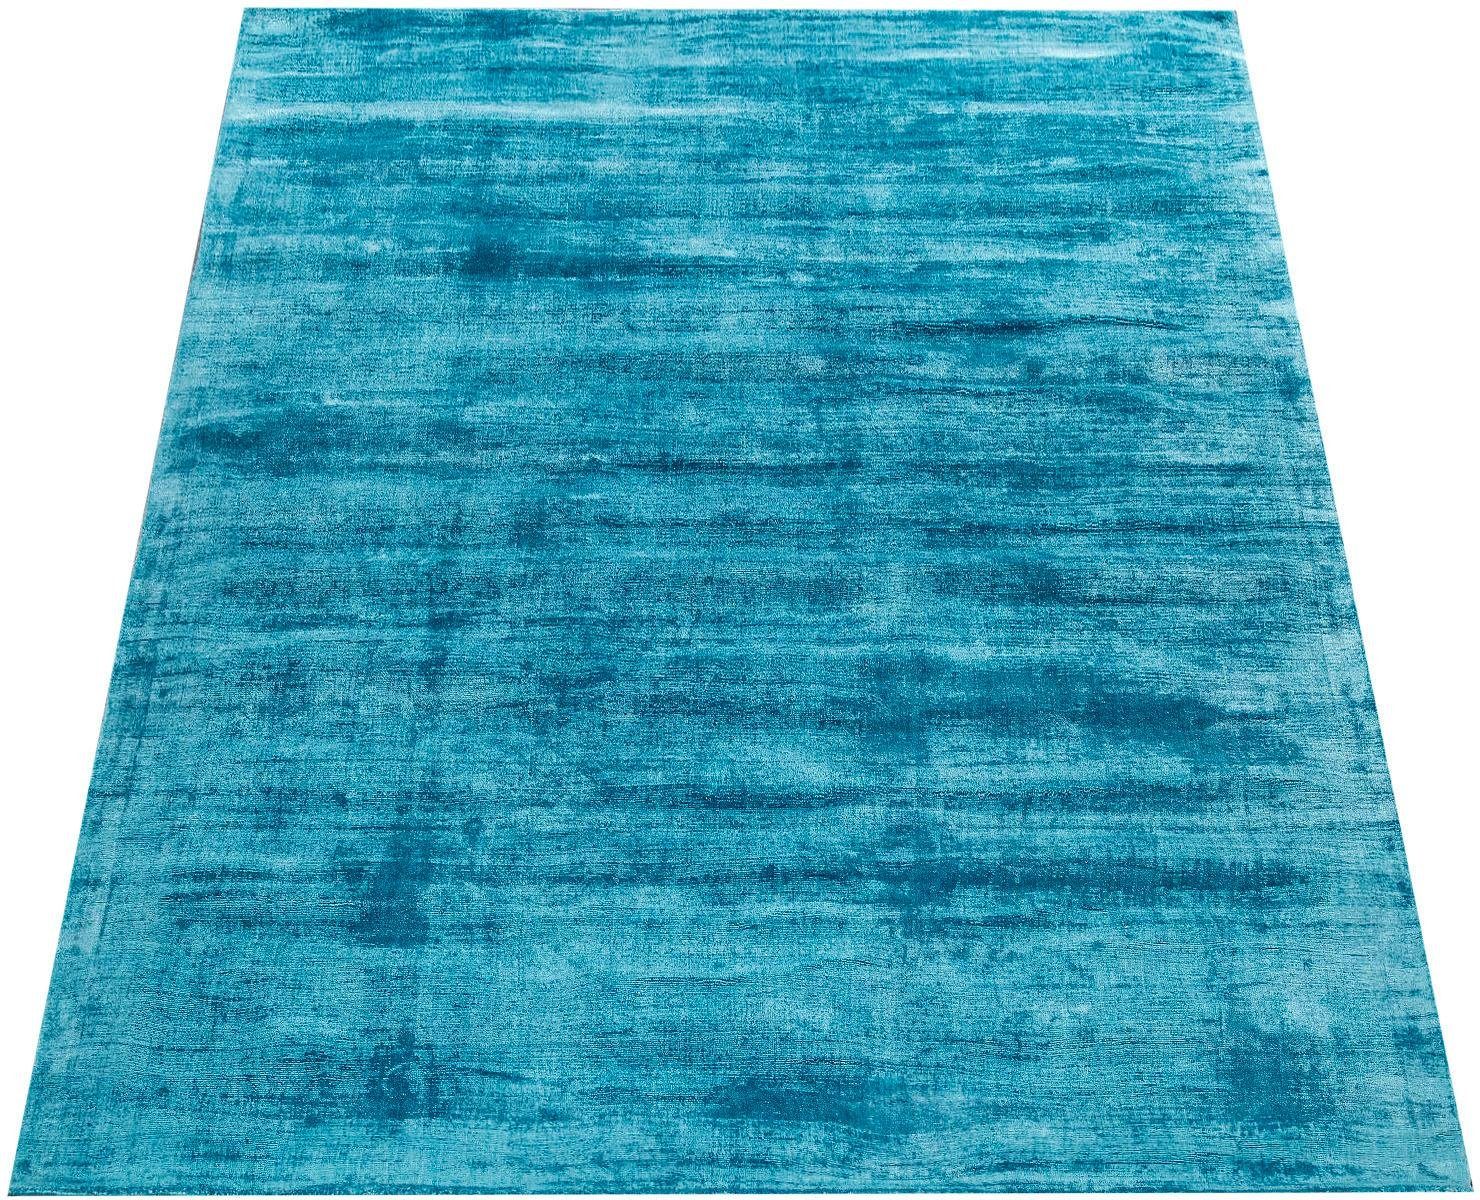 Paco Home Vloerkleed Glori 330 Handgeweven tapijt, laagpolig, 100% viscose, extra zacht met een lichte glans, ideaal voor in de woon- en slaapkamer